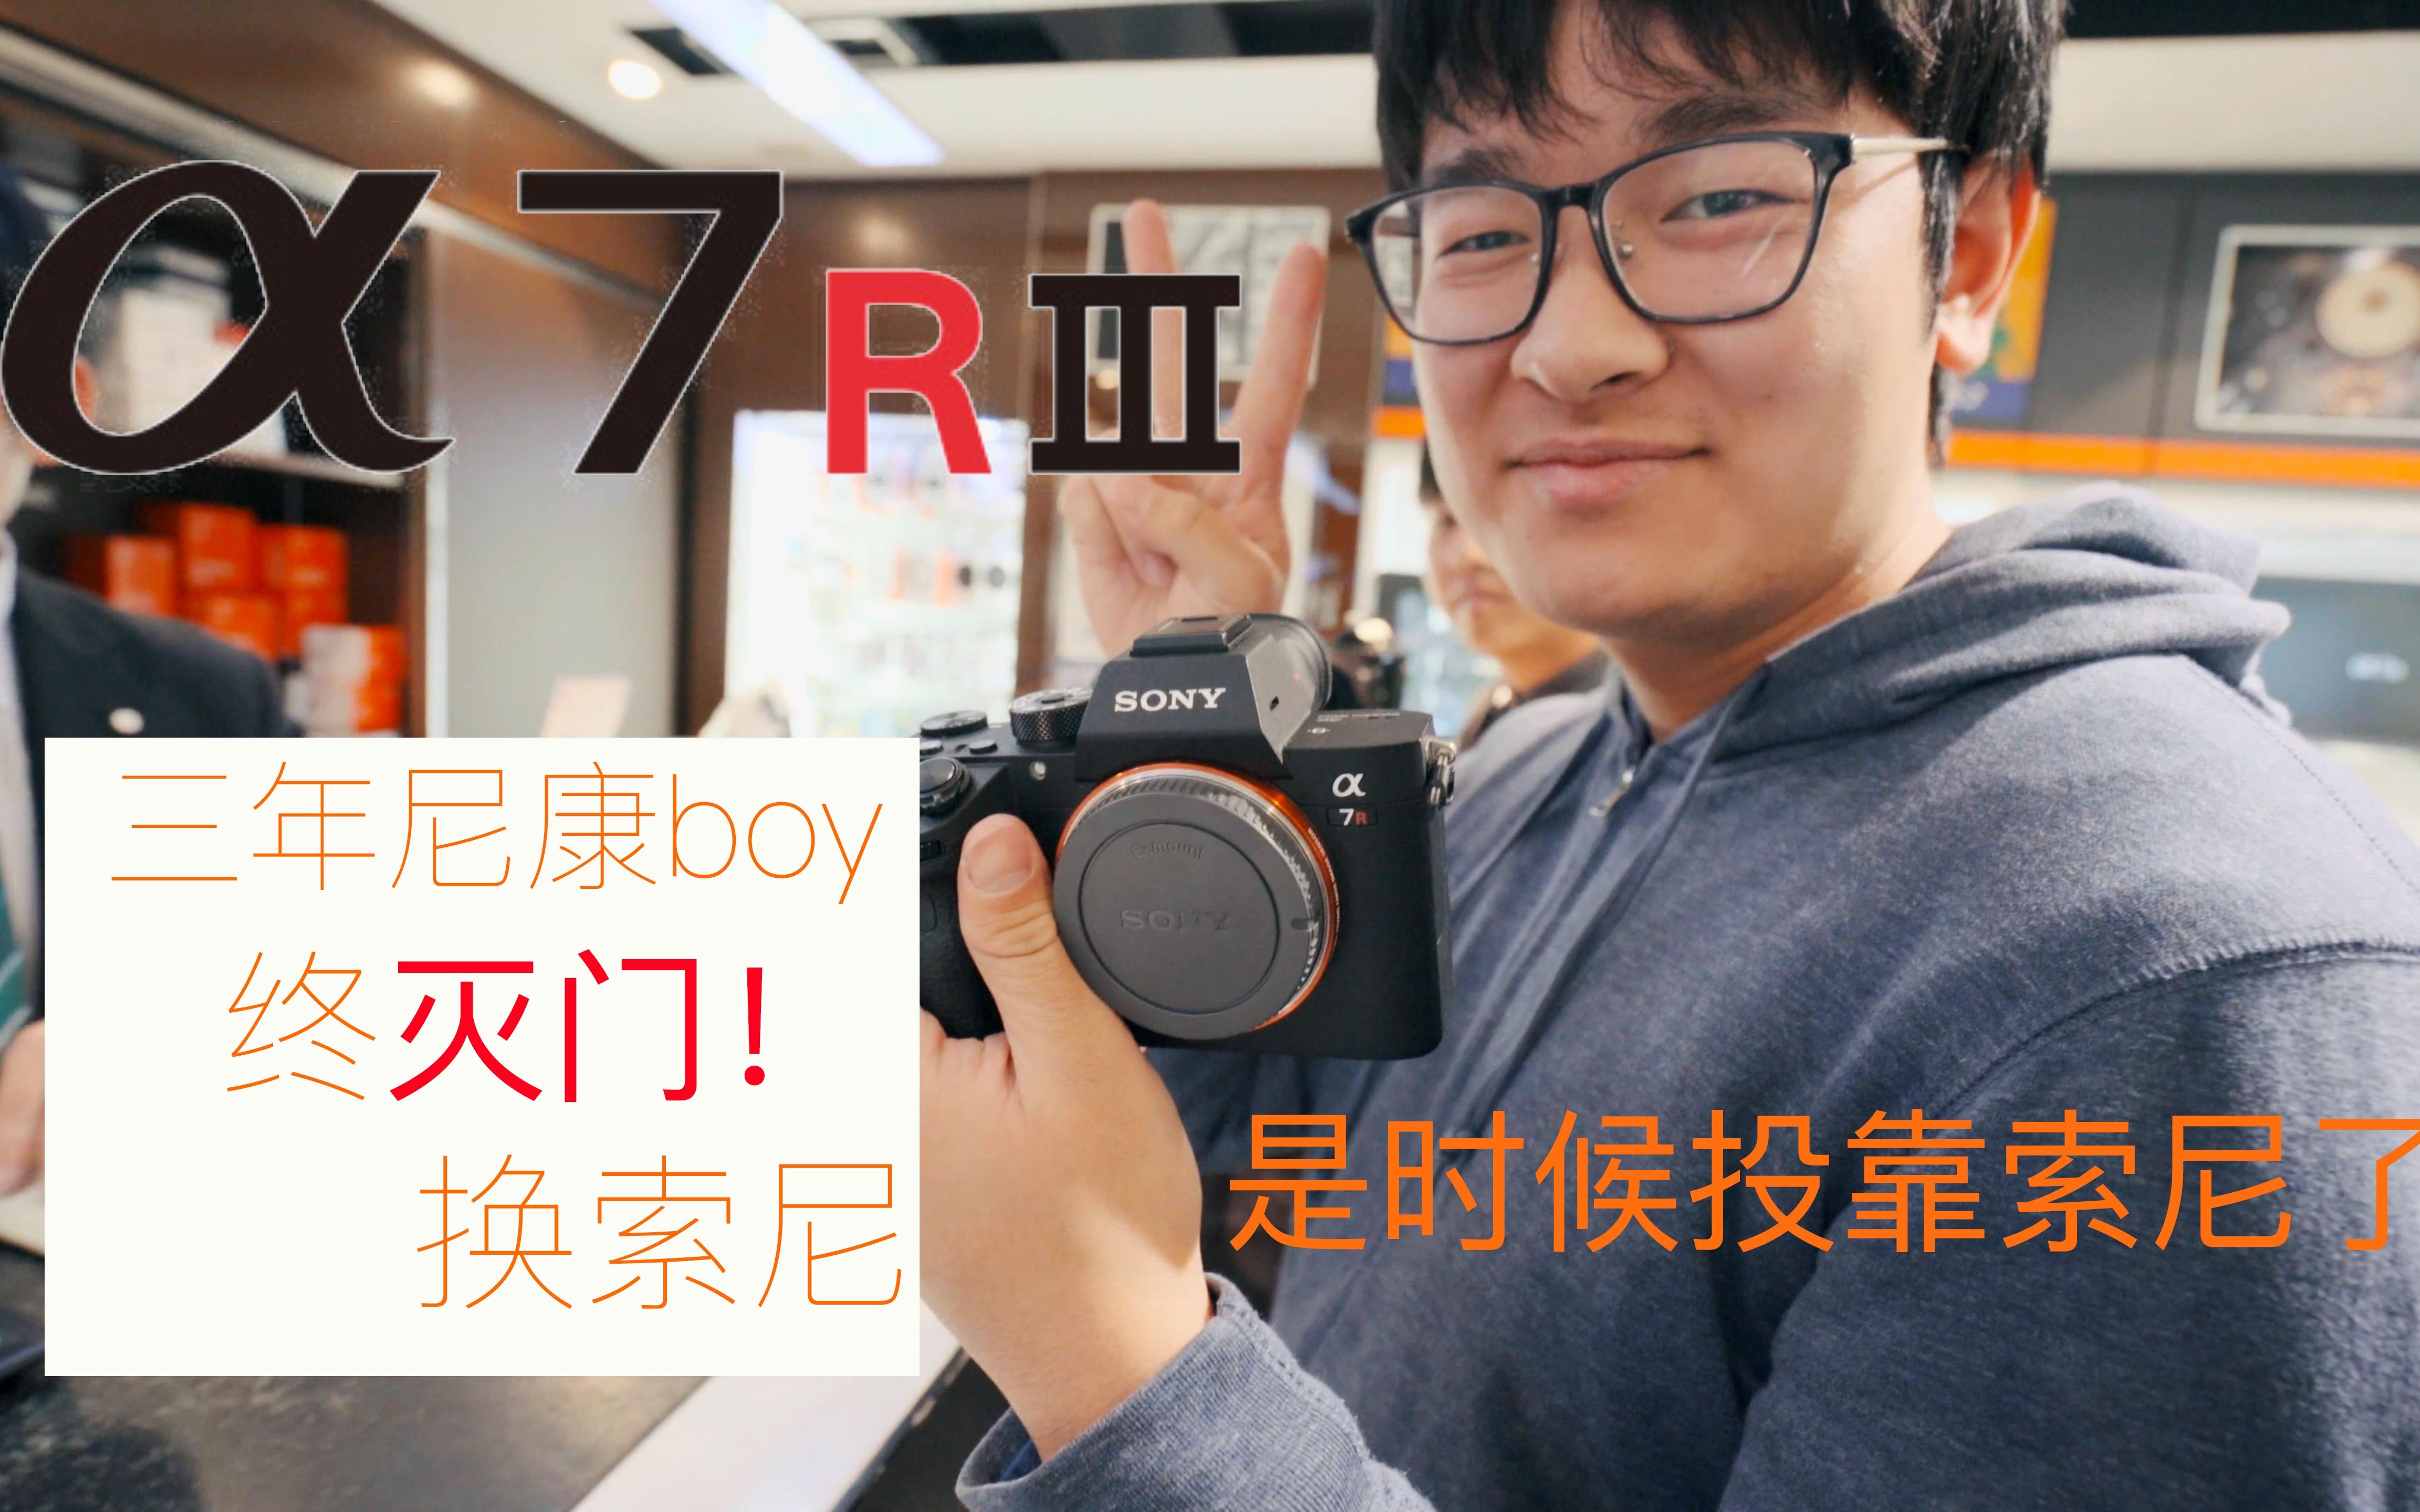 [Vlog] 终于灭门尼康850换索尼R3了，在日本相机二手店挑相机，心里还有些不舍。No.9